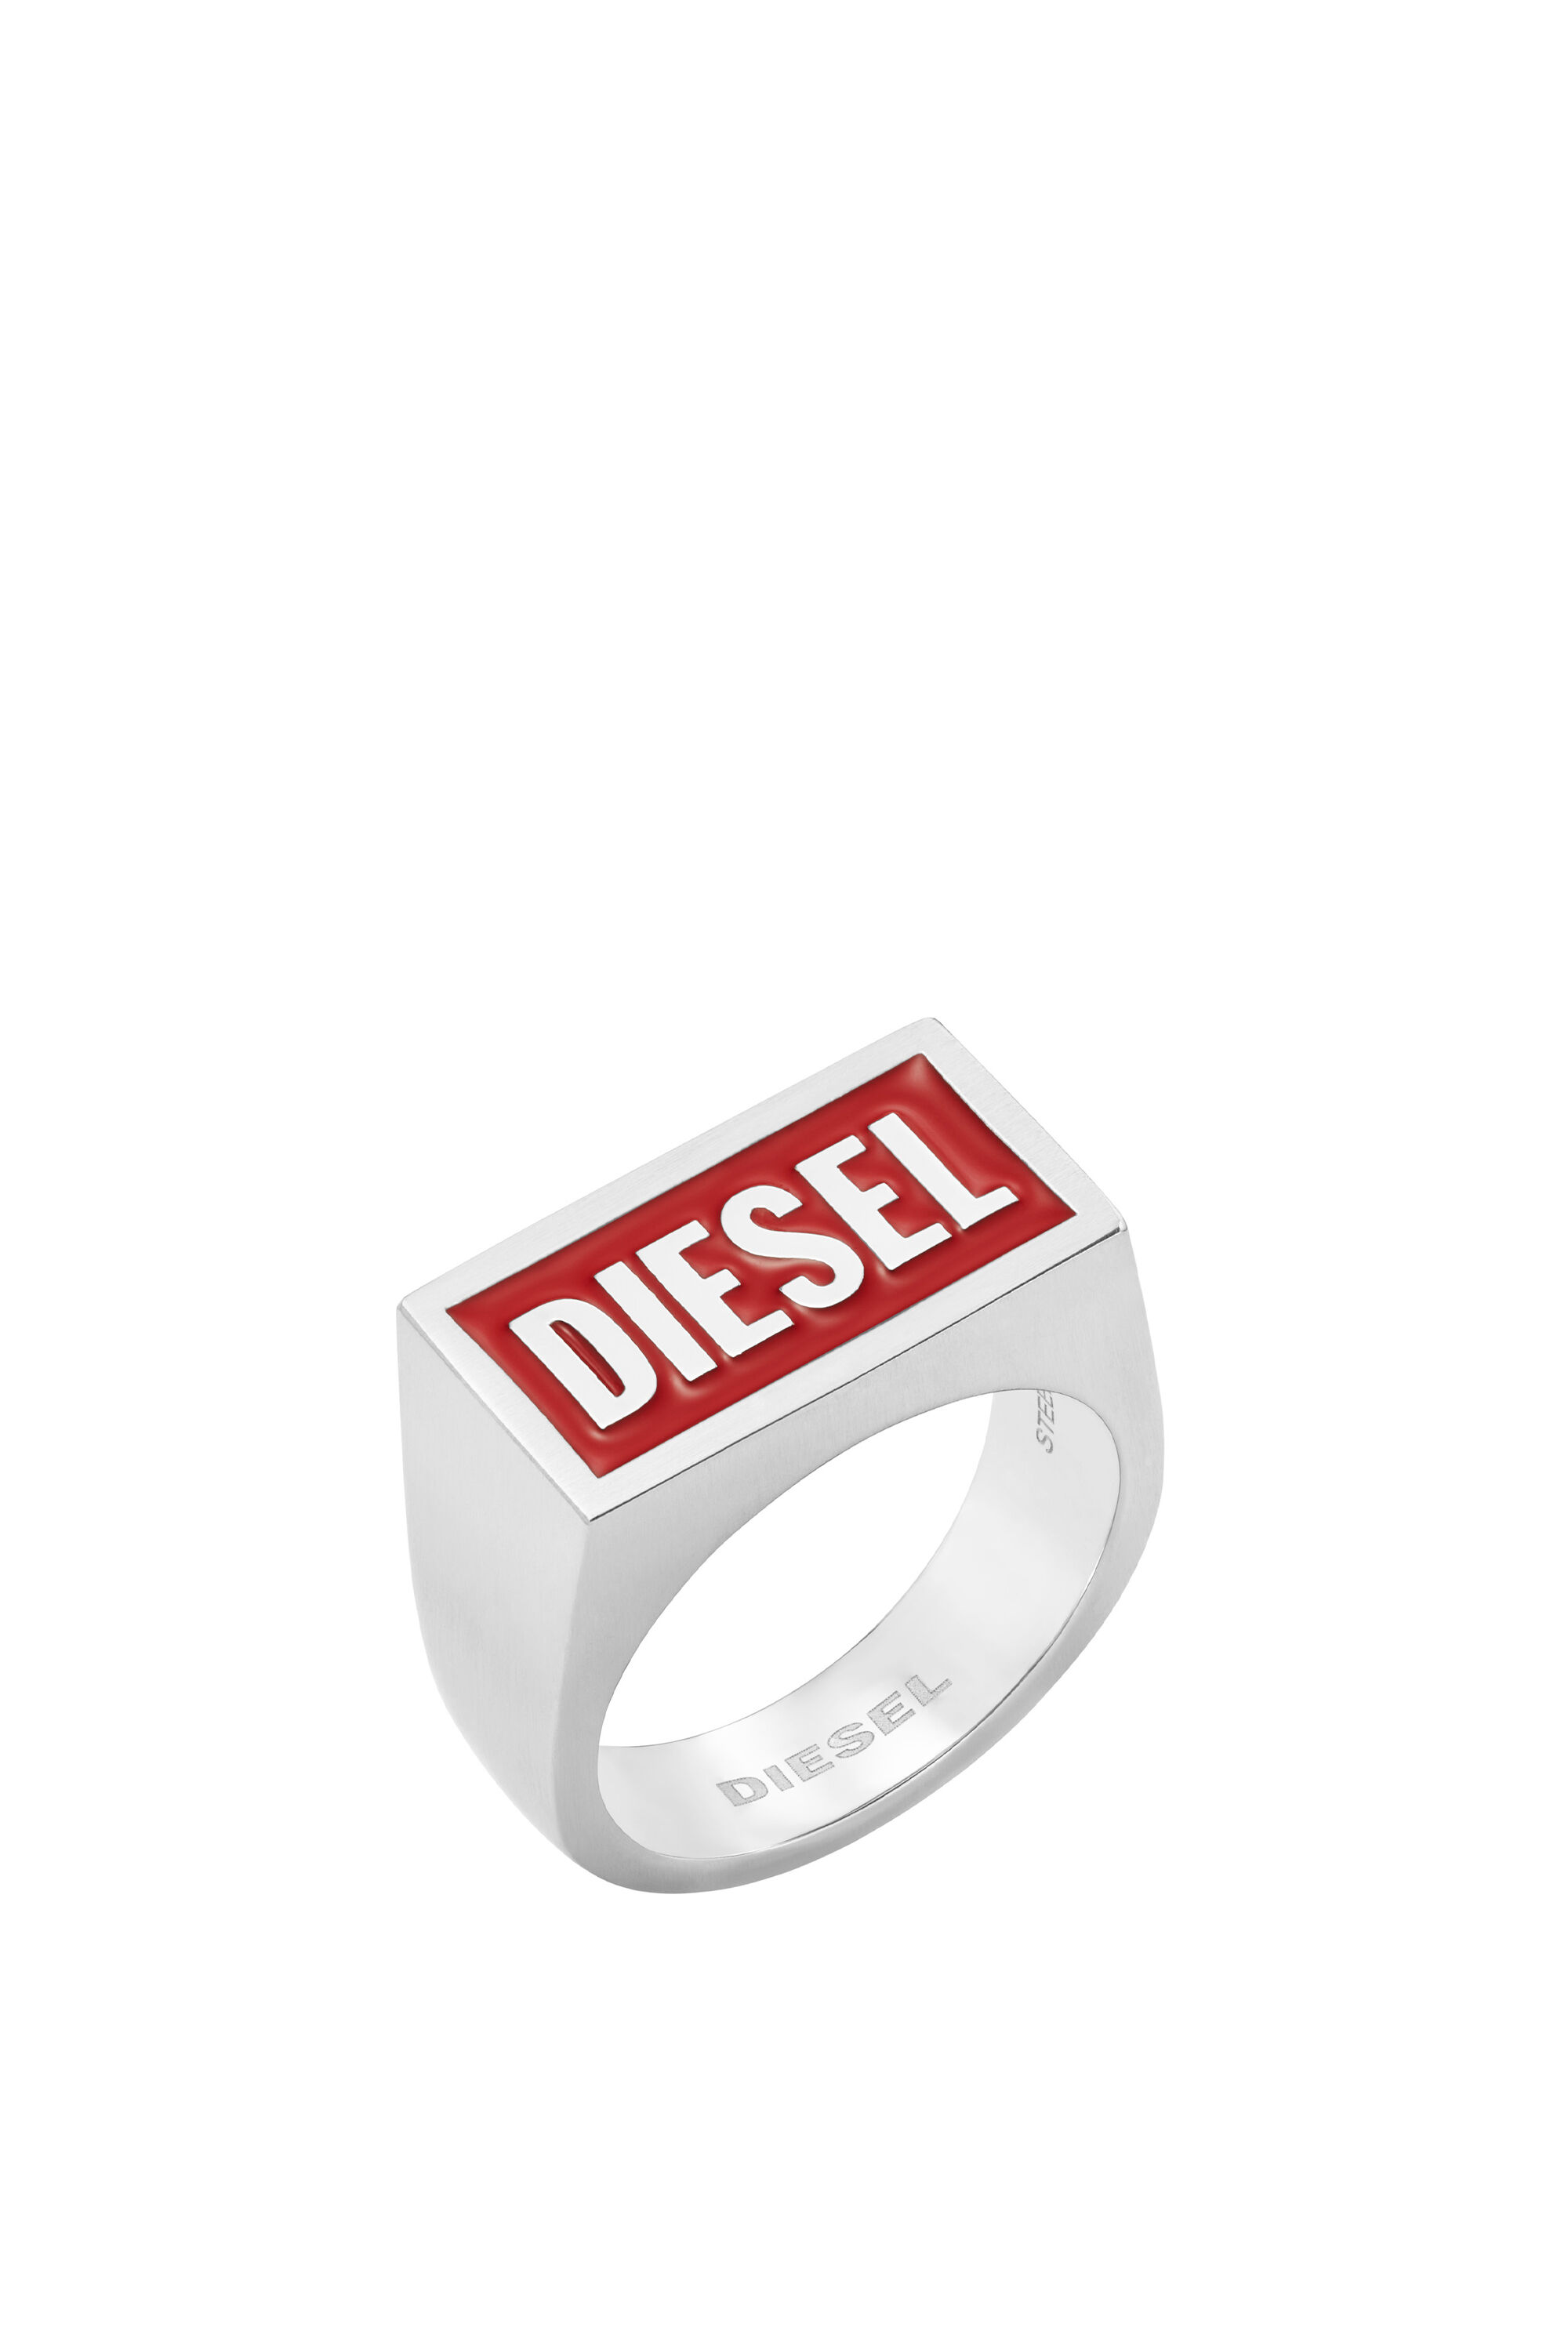 Diesel - DX1366, Silver - Image 1